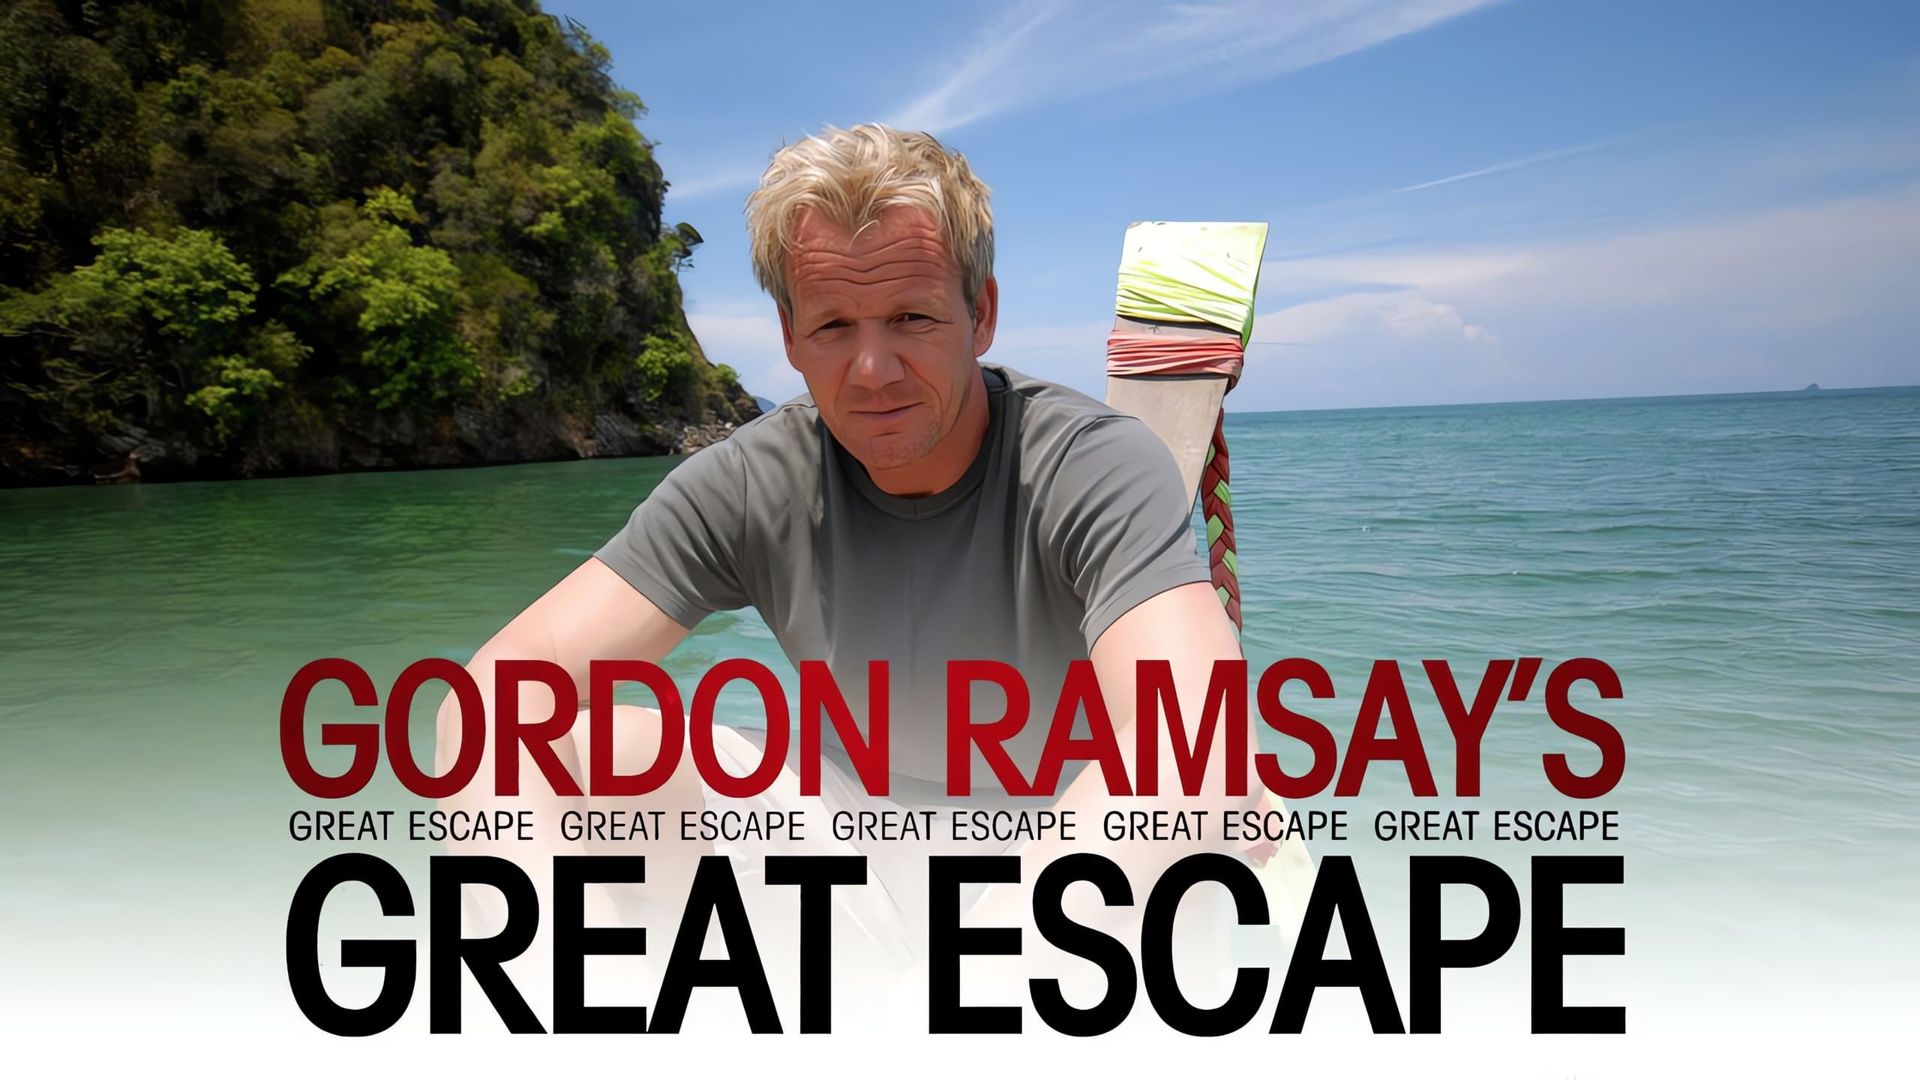 Gordon's Great Escape background